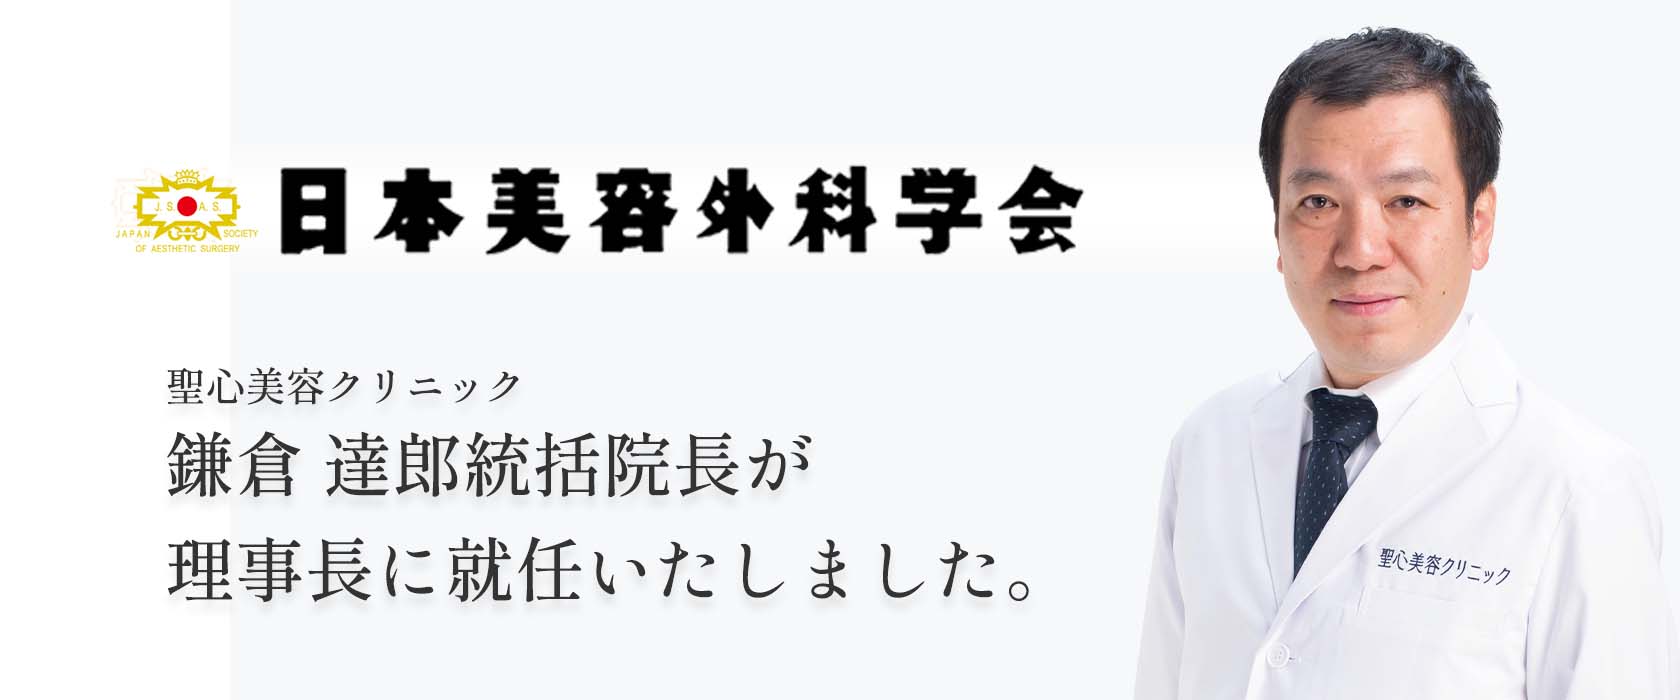 日本美容外科学会理事長就任